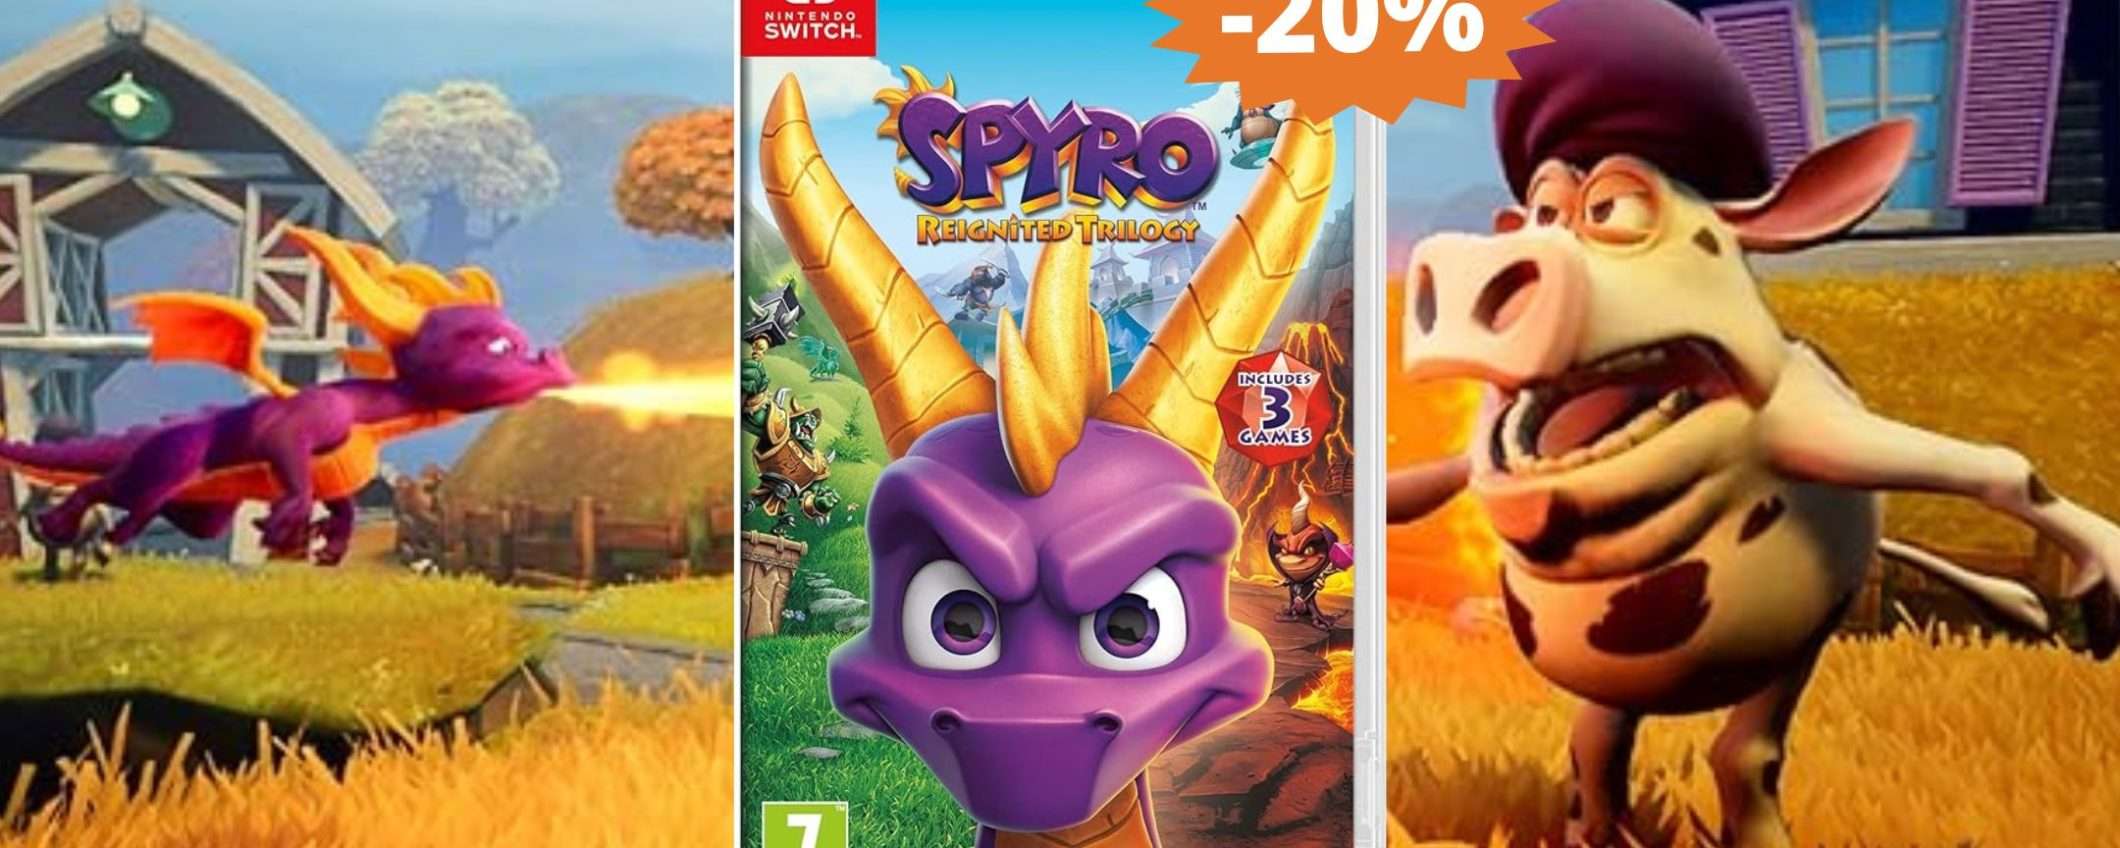 Spyro la trilogia per Nintendo Switch: SUPER sconto del 20% su Amazon